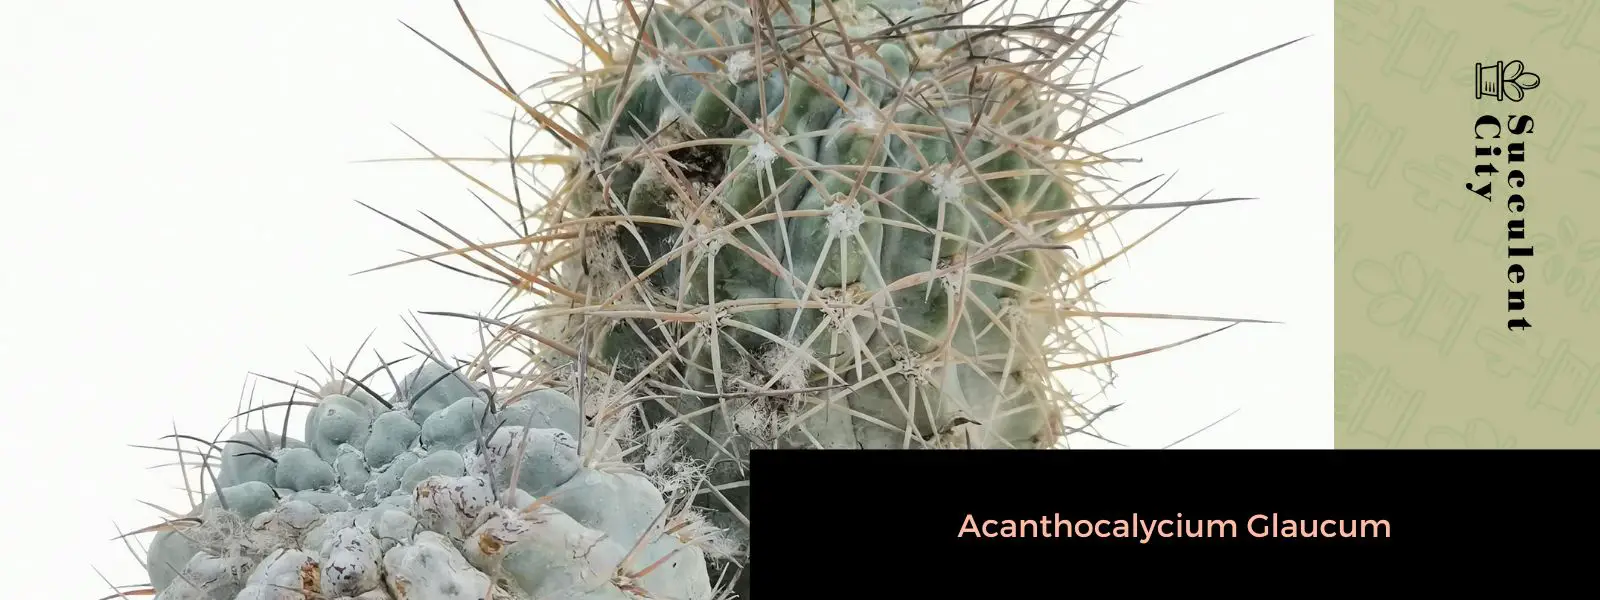 Acanthocalycium glaucum (Echinopsis glaucina)